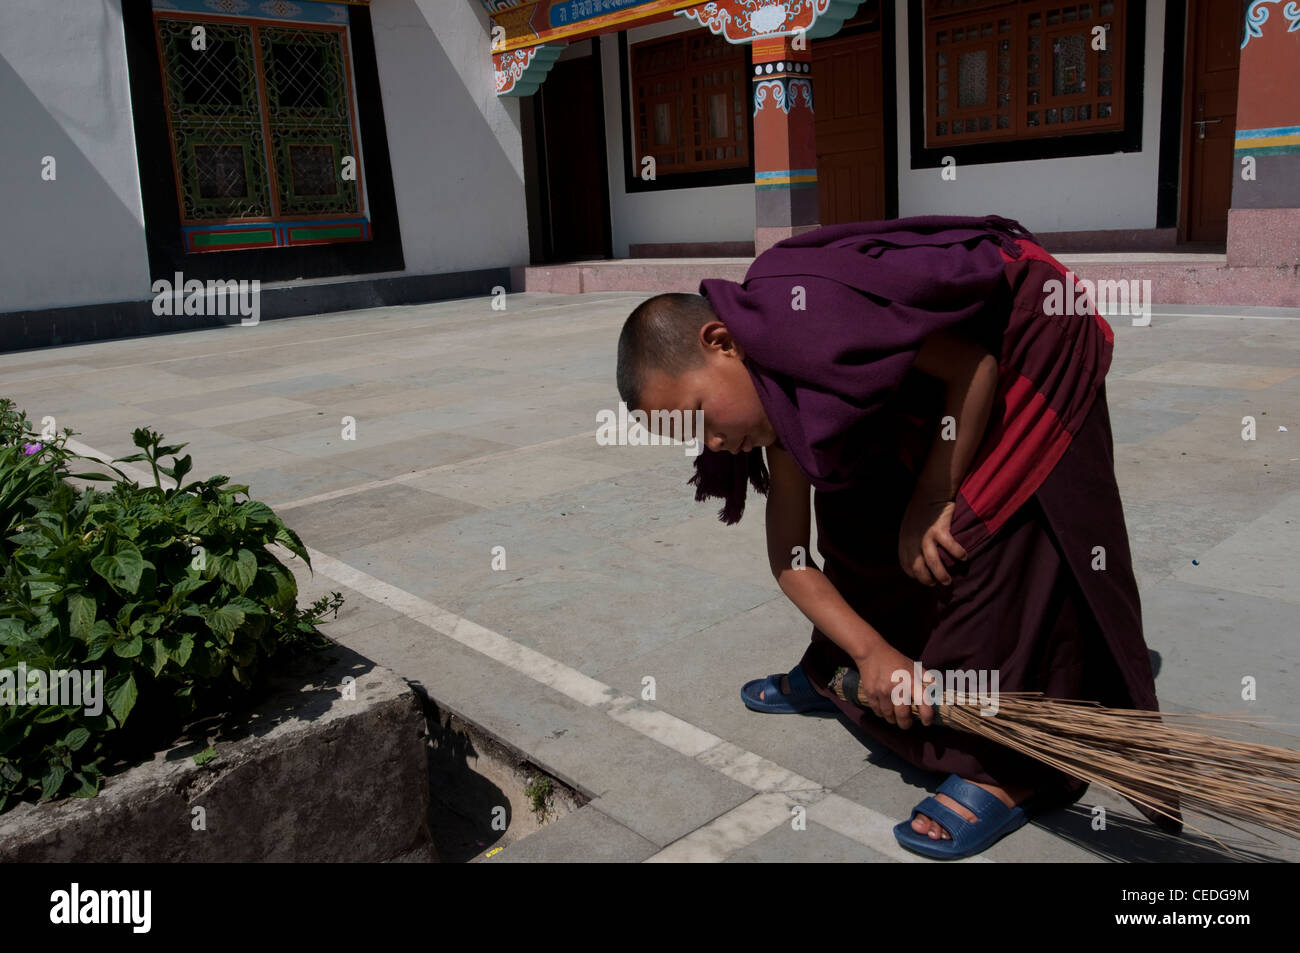 Le moine bouddhiste accomplit son devoir de les balayer, monastère au Sikkim, Inde Banque D'Images